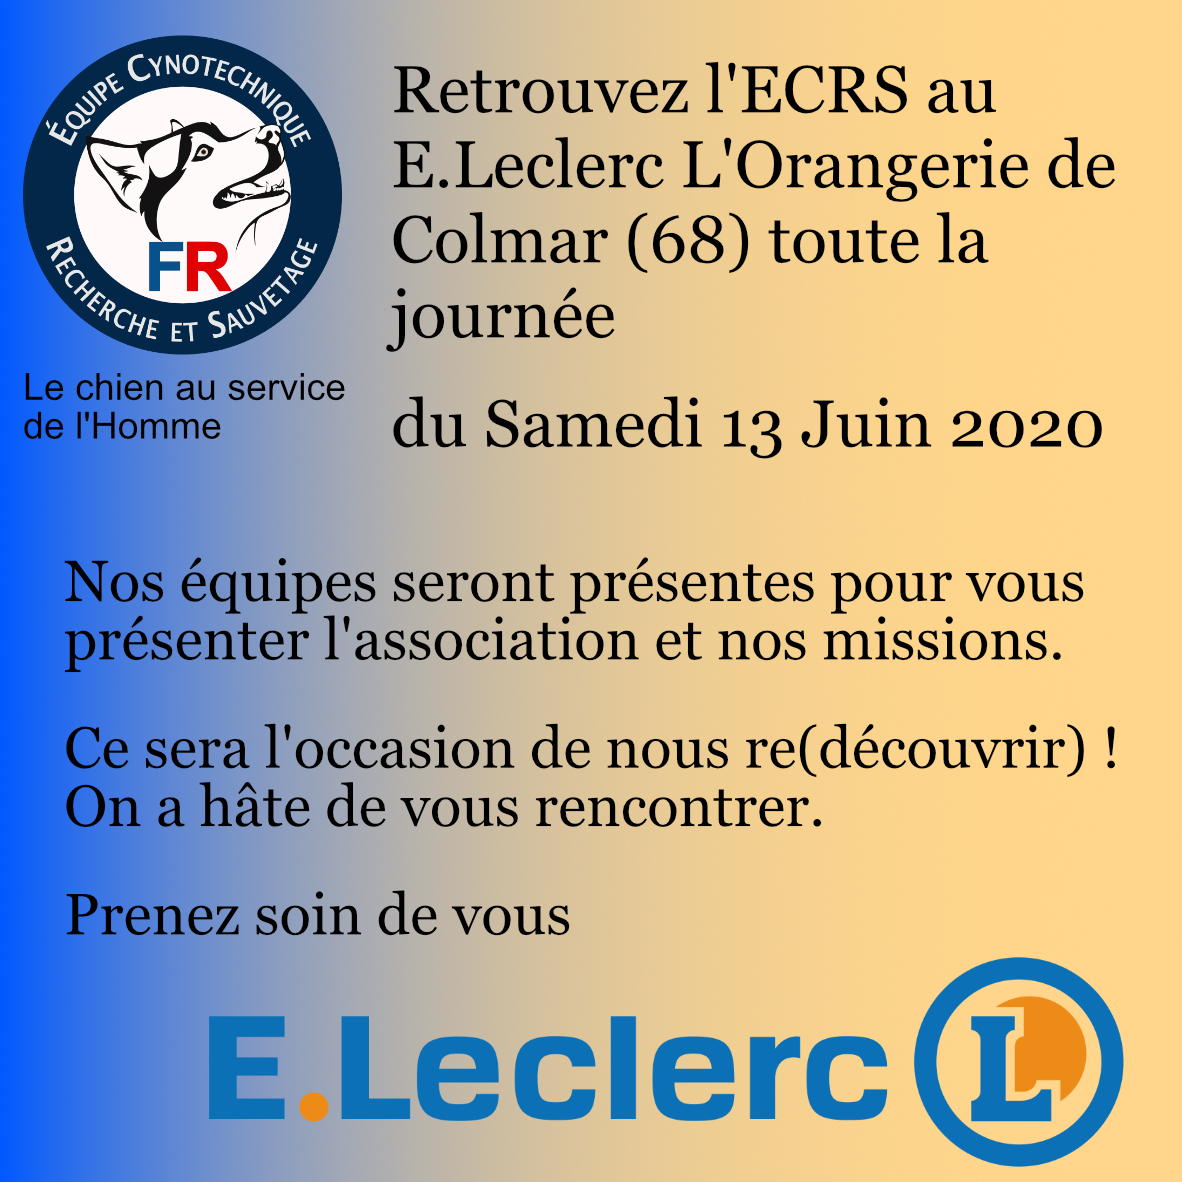 Pre sentation Leclerc 13 juin 2020 579